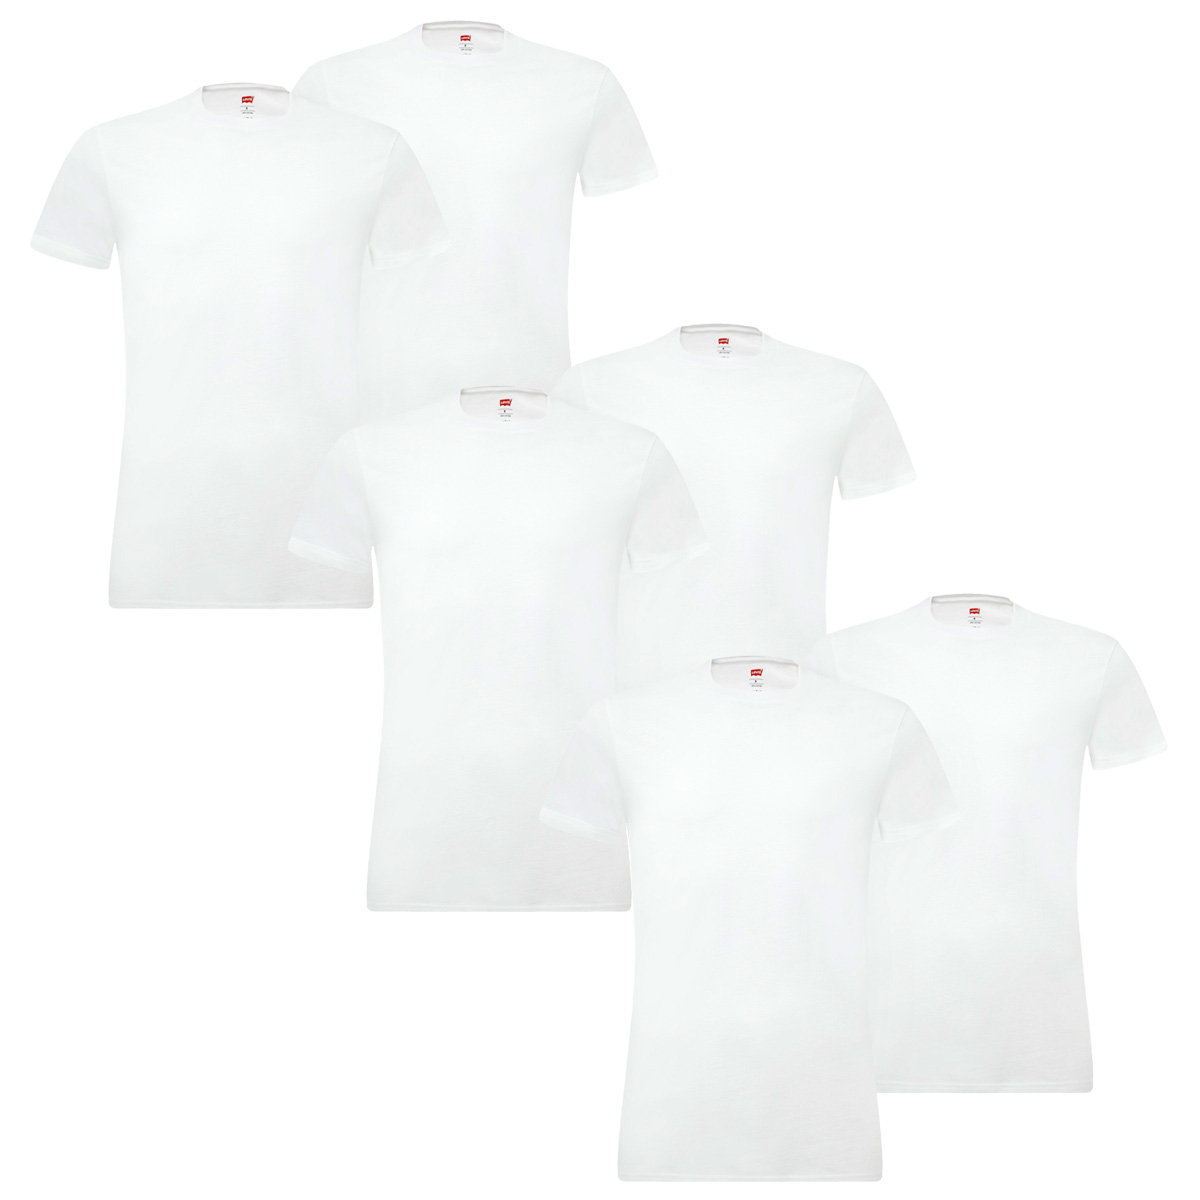 6er Pack Levis Solid Crew T-Shirt Men Herren Unterhemd Rundhals Stretch Cotton